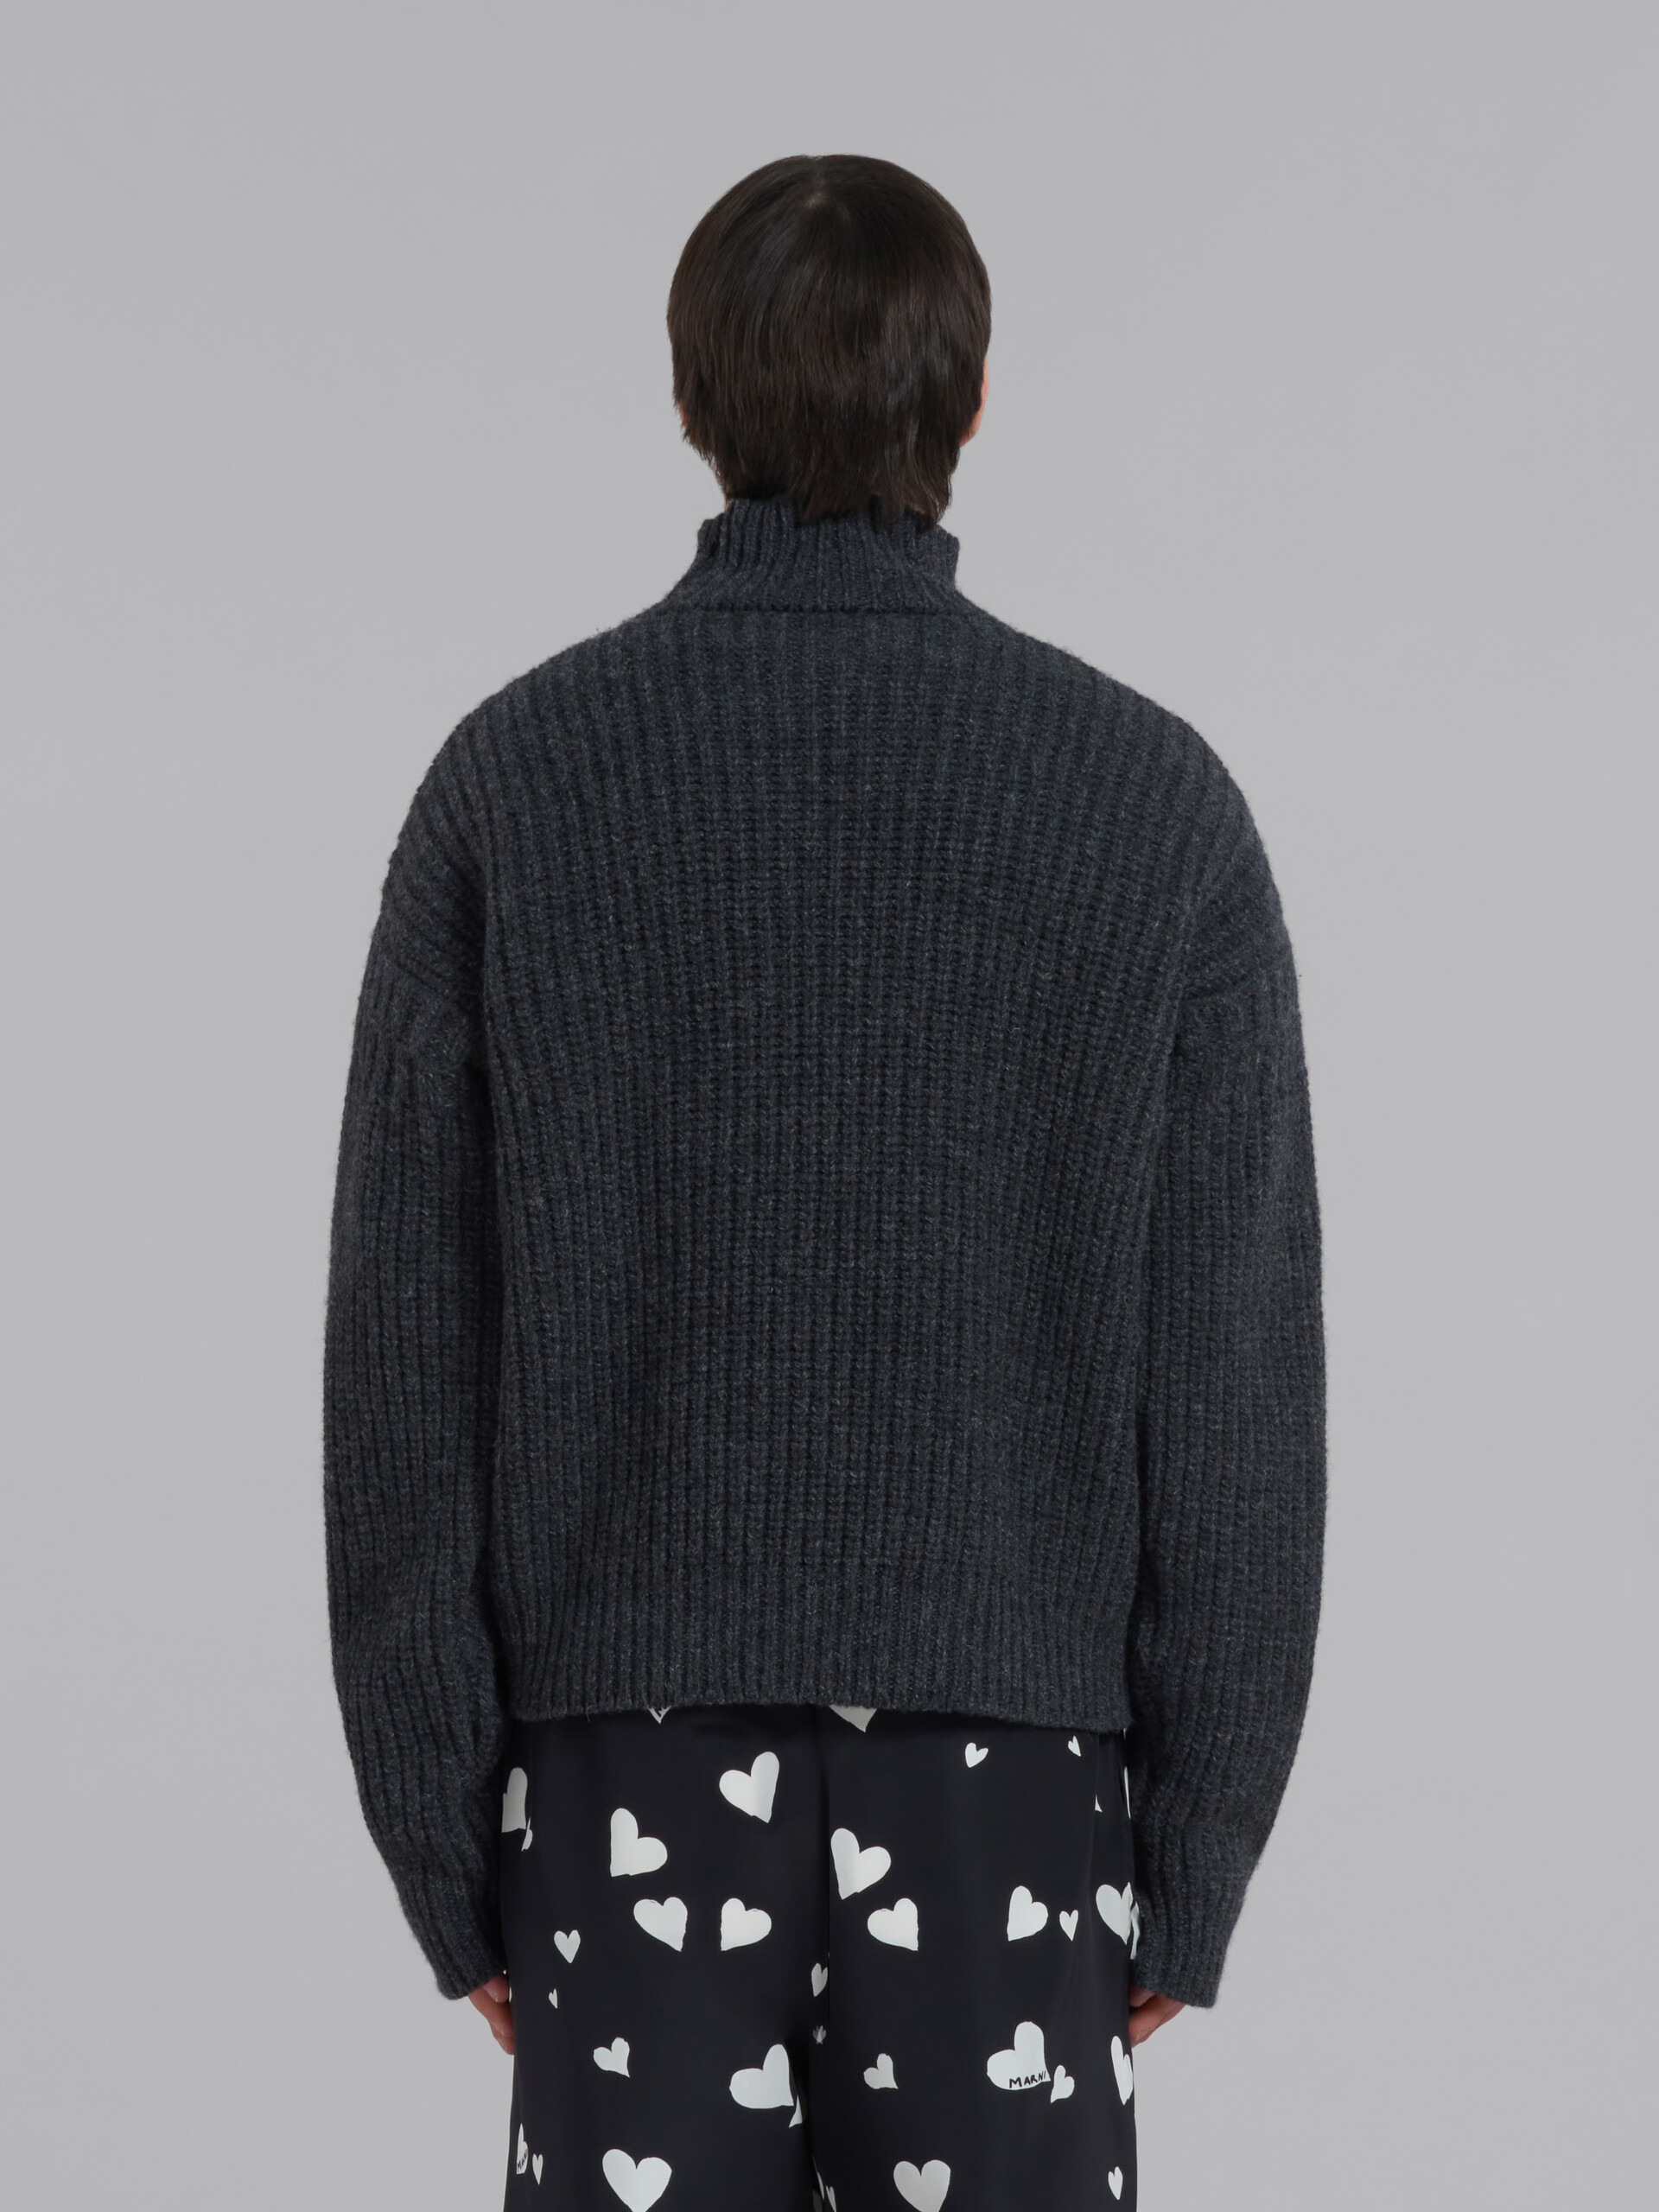 Jersey gris de lana virgen con bajo deshilachado - jerseys - Image 3